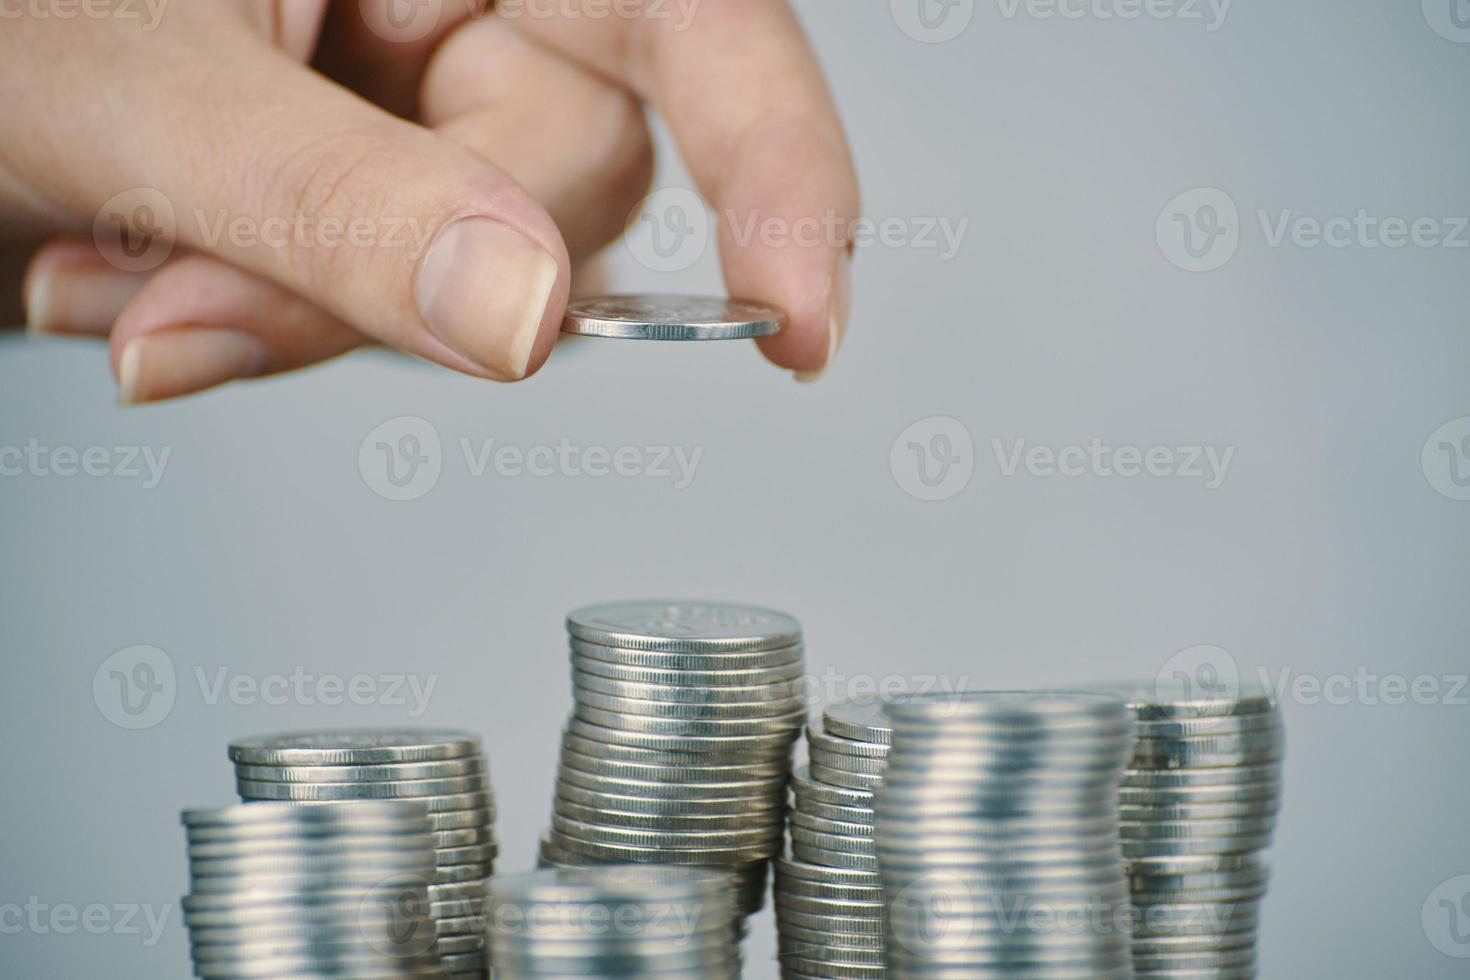 kvinnans hand som sätter silverpengmynt att stapla foto